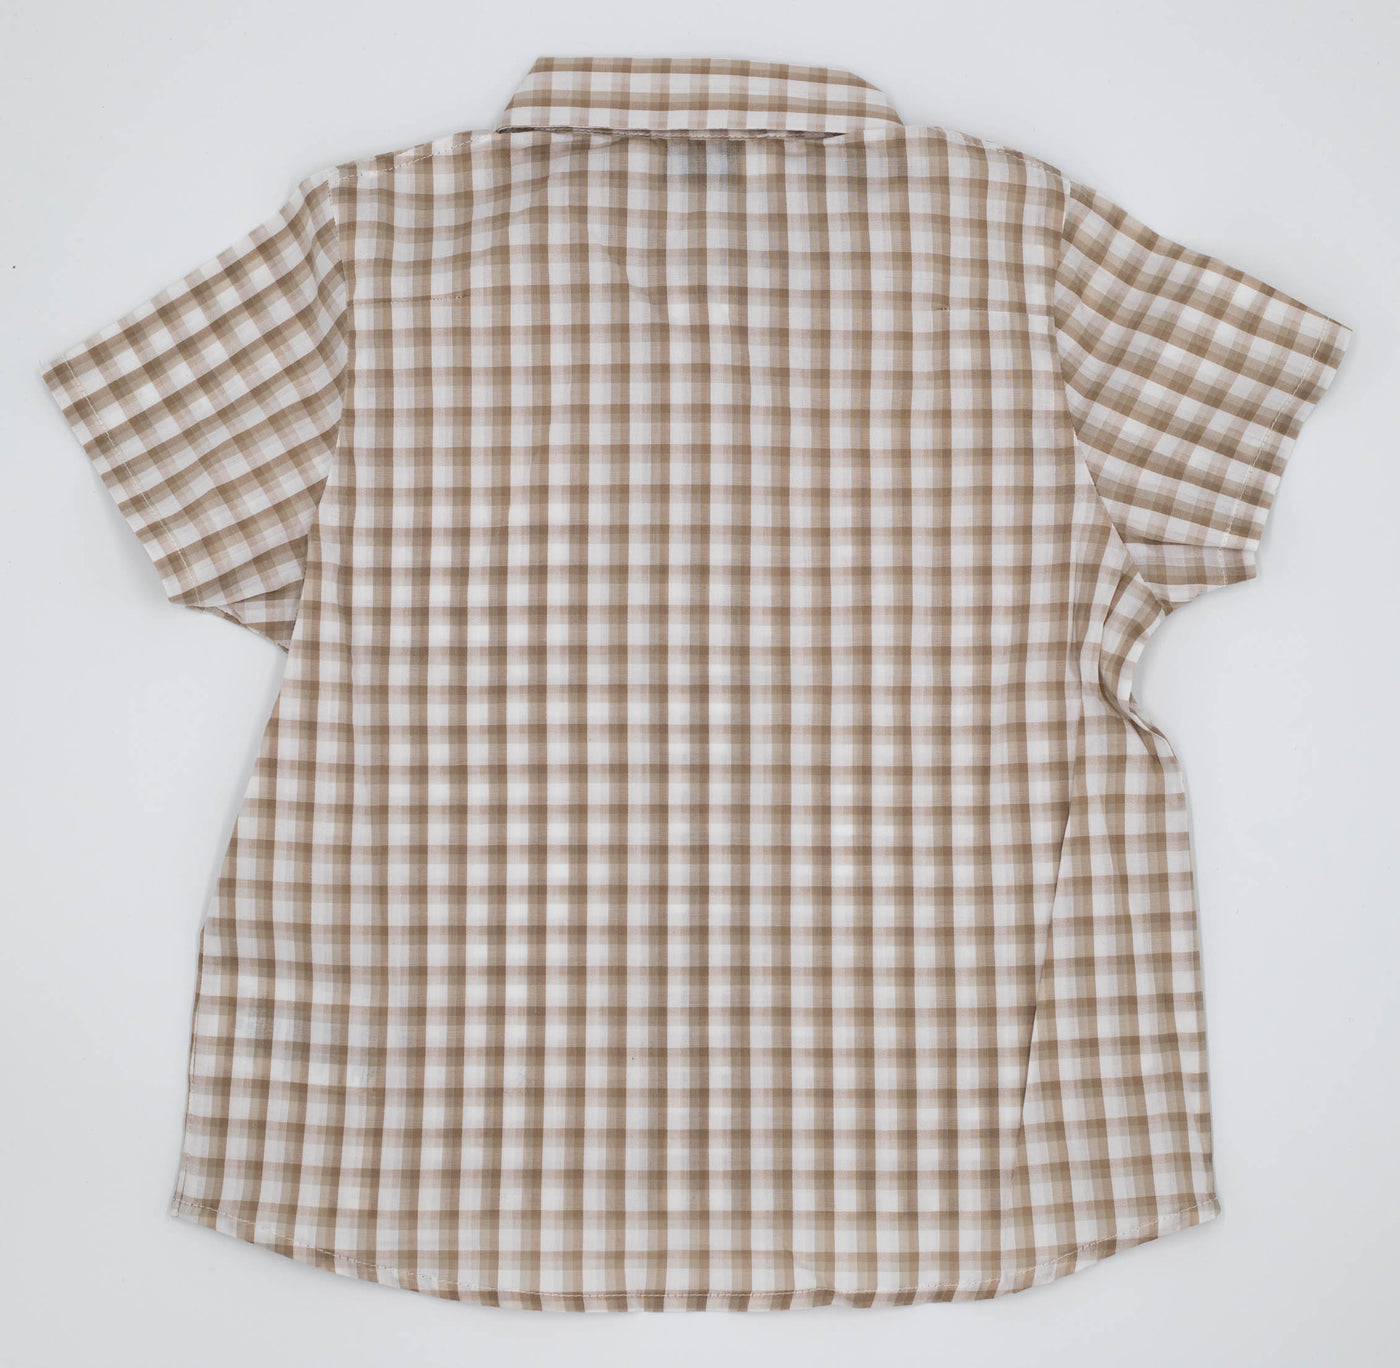 Baby Dior – Boys Shirt Beige Caro